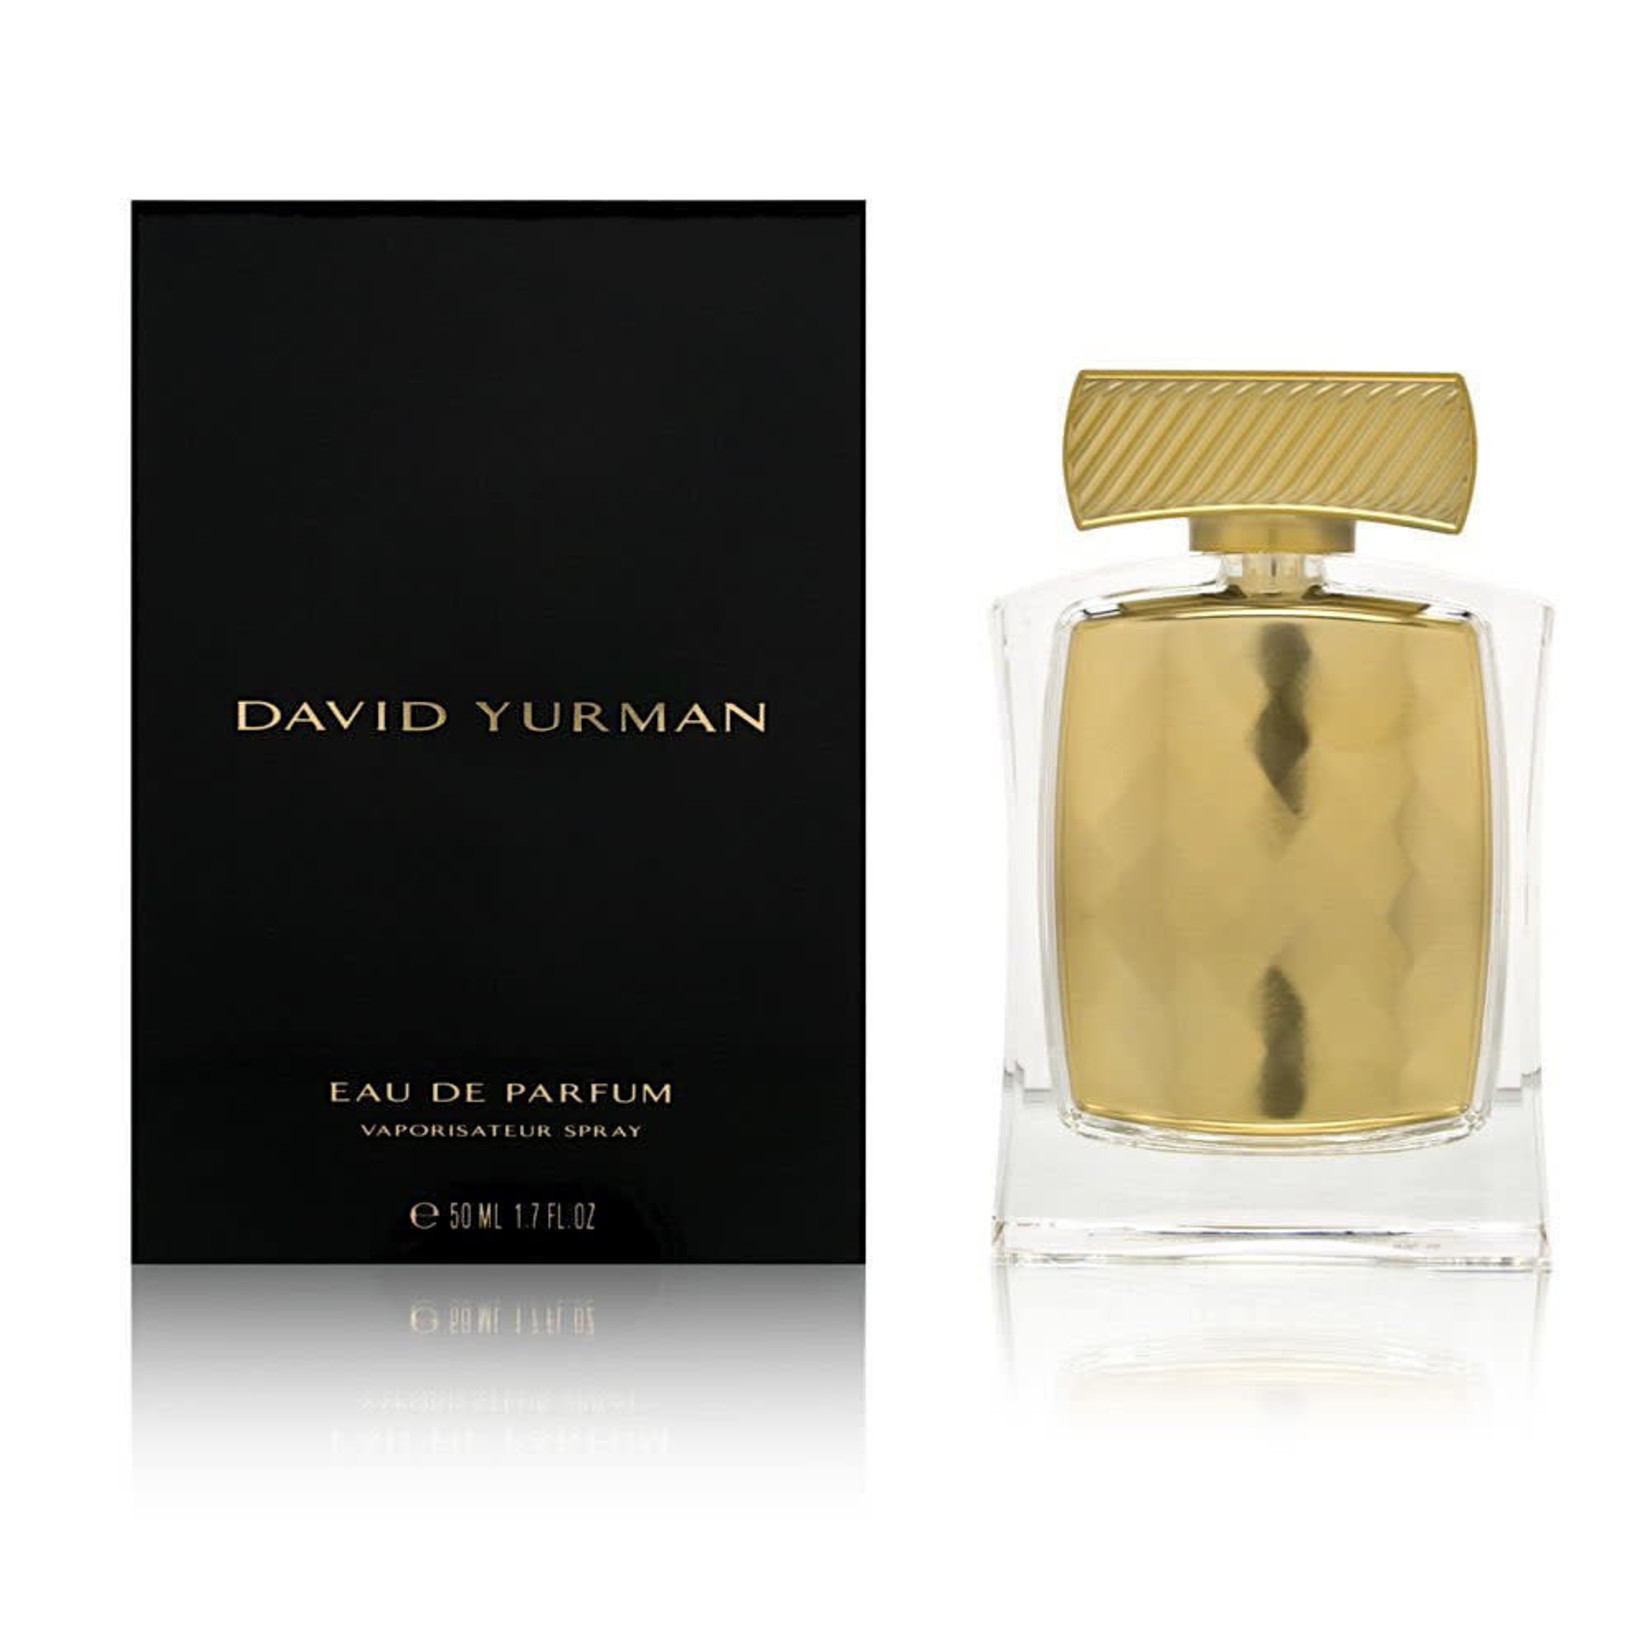 David Yurman David Yurman Eau de Parfum for Women